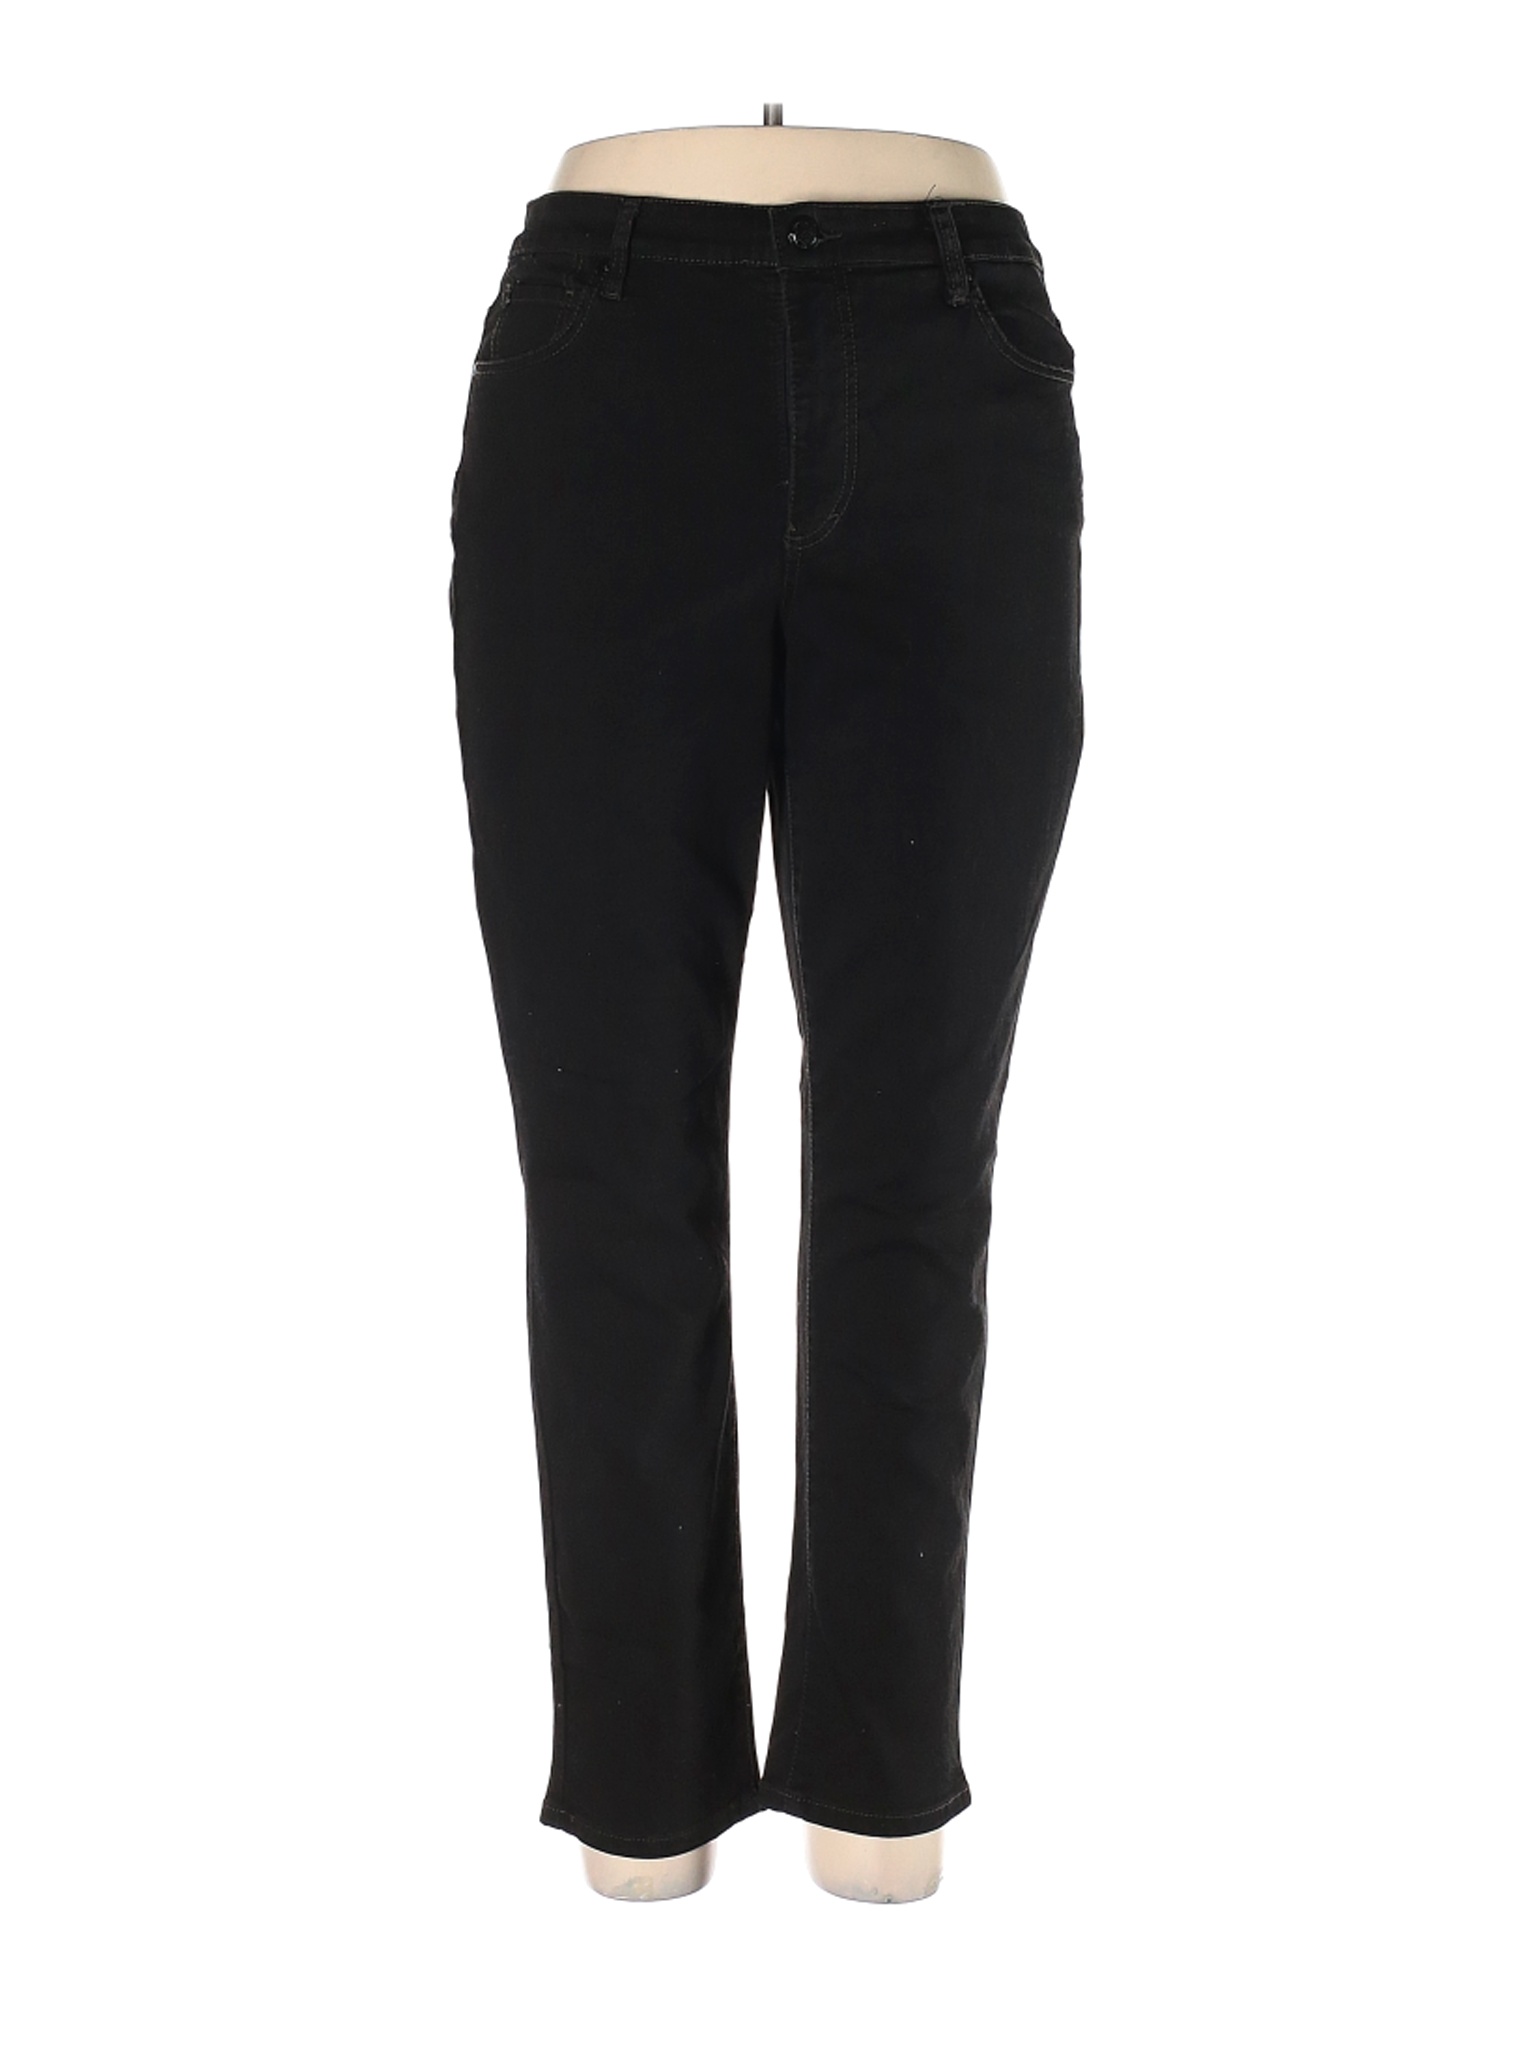 Bandolino Women Black Jeans 14 | eBay